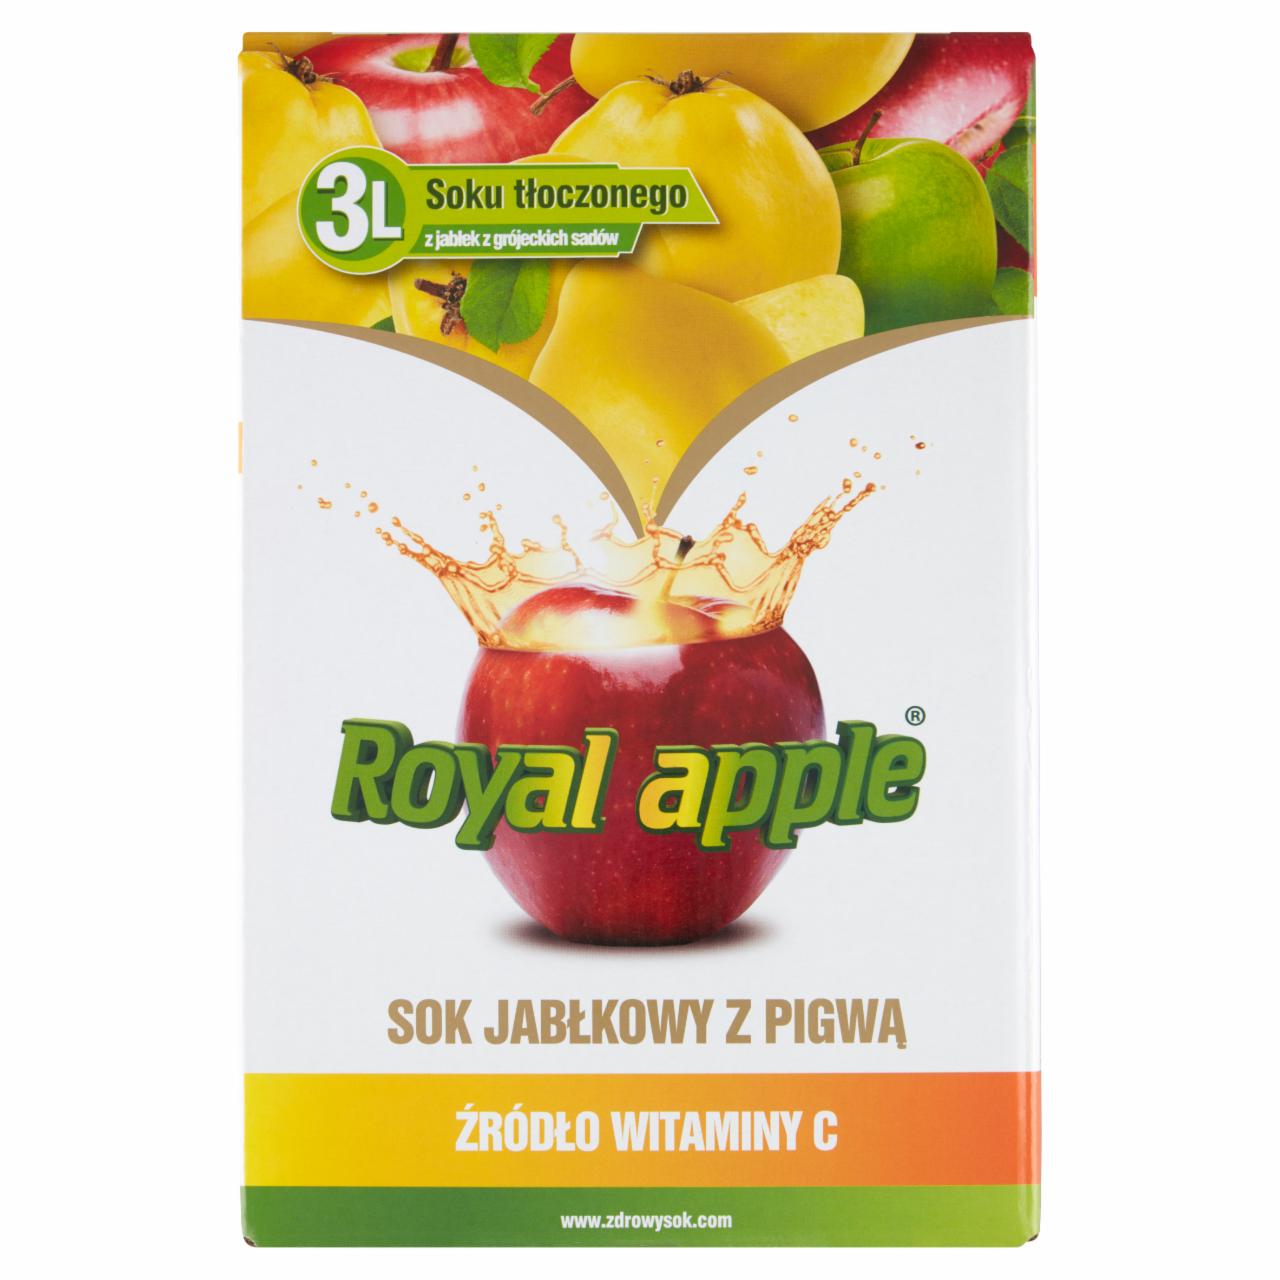 Zdjęcia - Royal apple Sok jabłkowy z pigwą 3 l